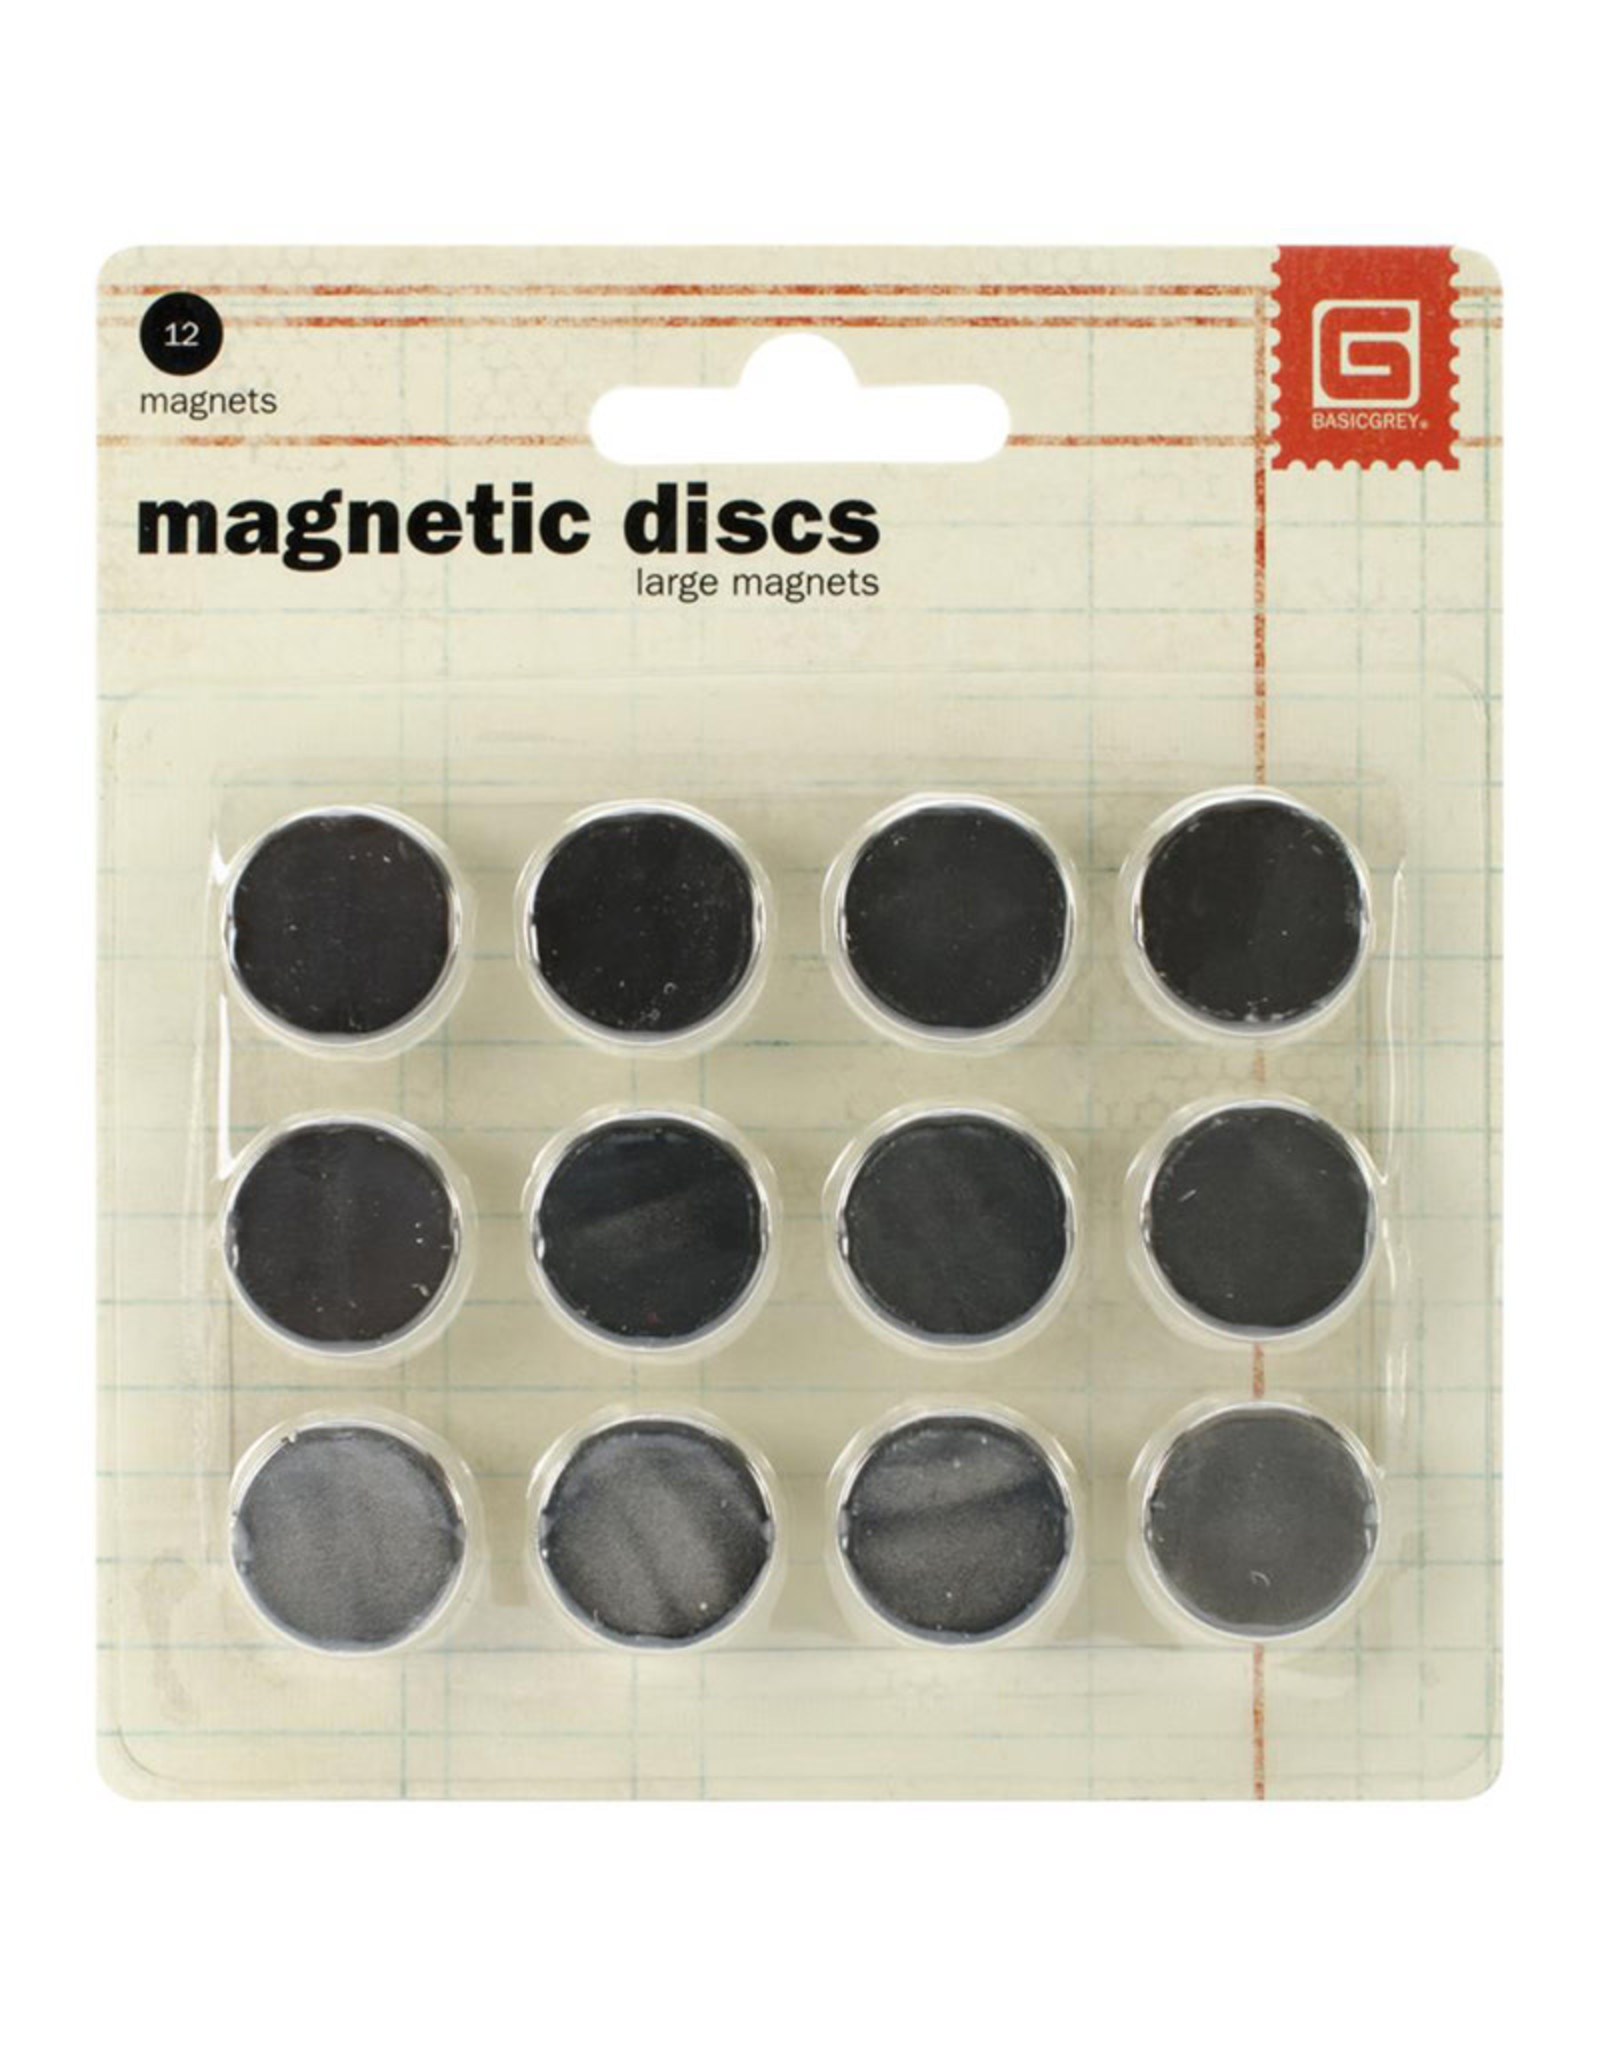 BASIC GREY BASIC GREY LARGE MAGNETIC DISCS 12PK MAGNETS